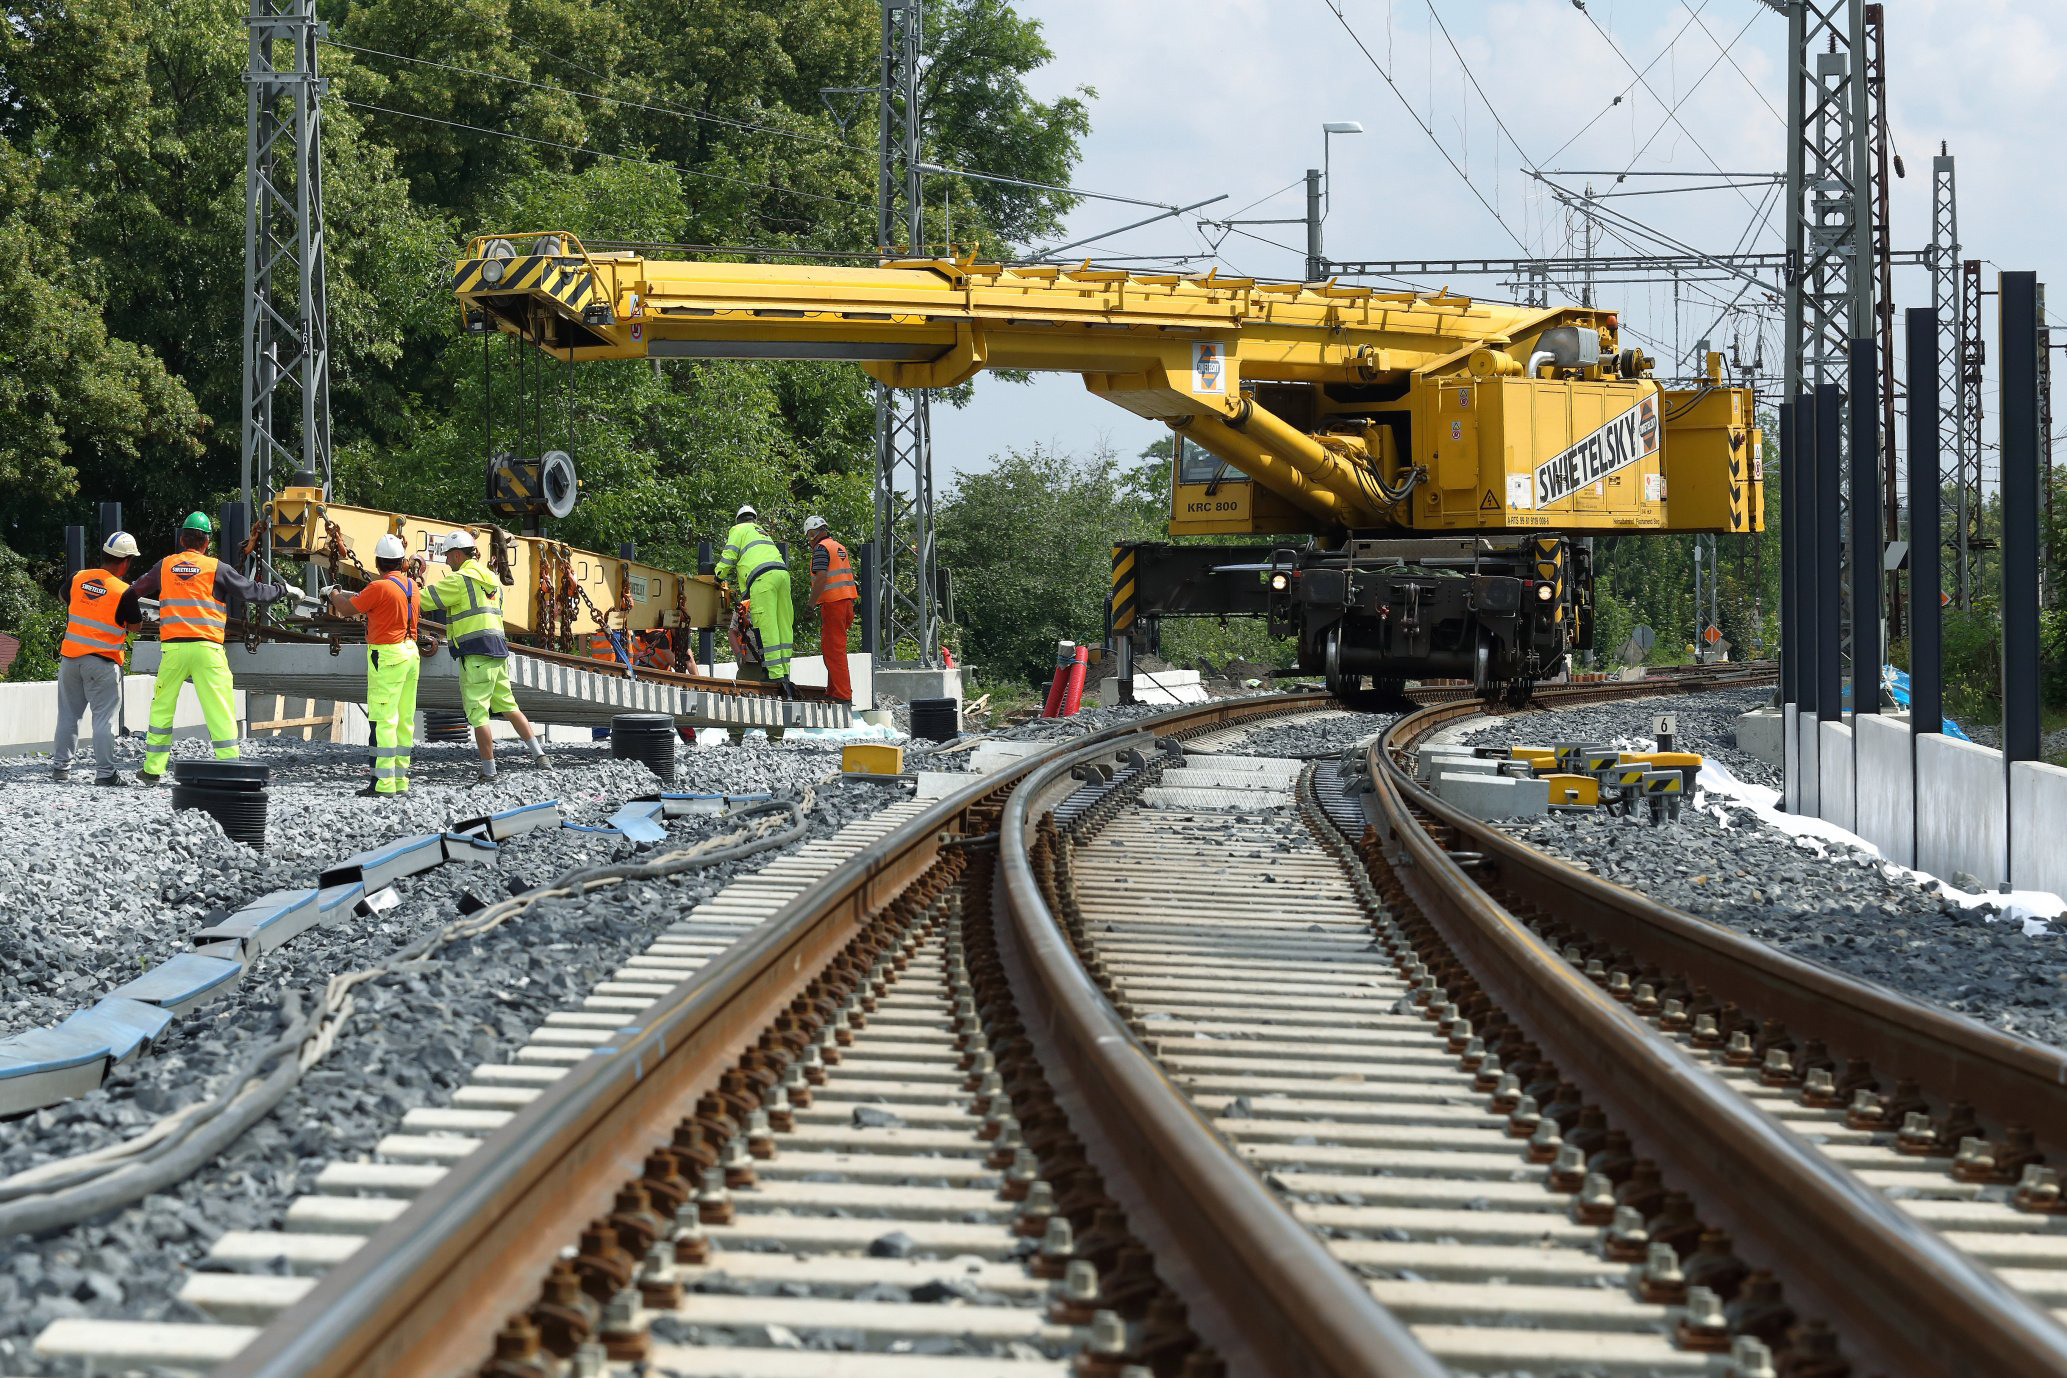 Obnova železniční stanice, Čelákovice - Bahnbau